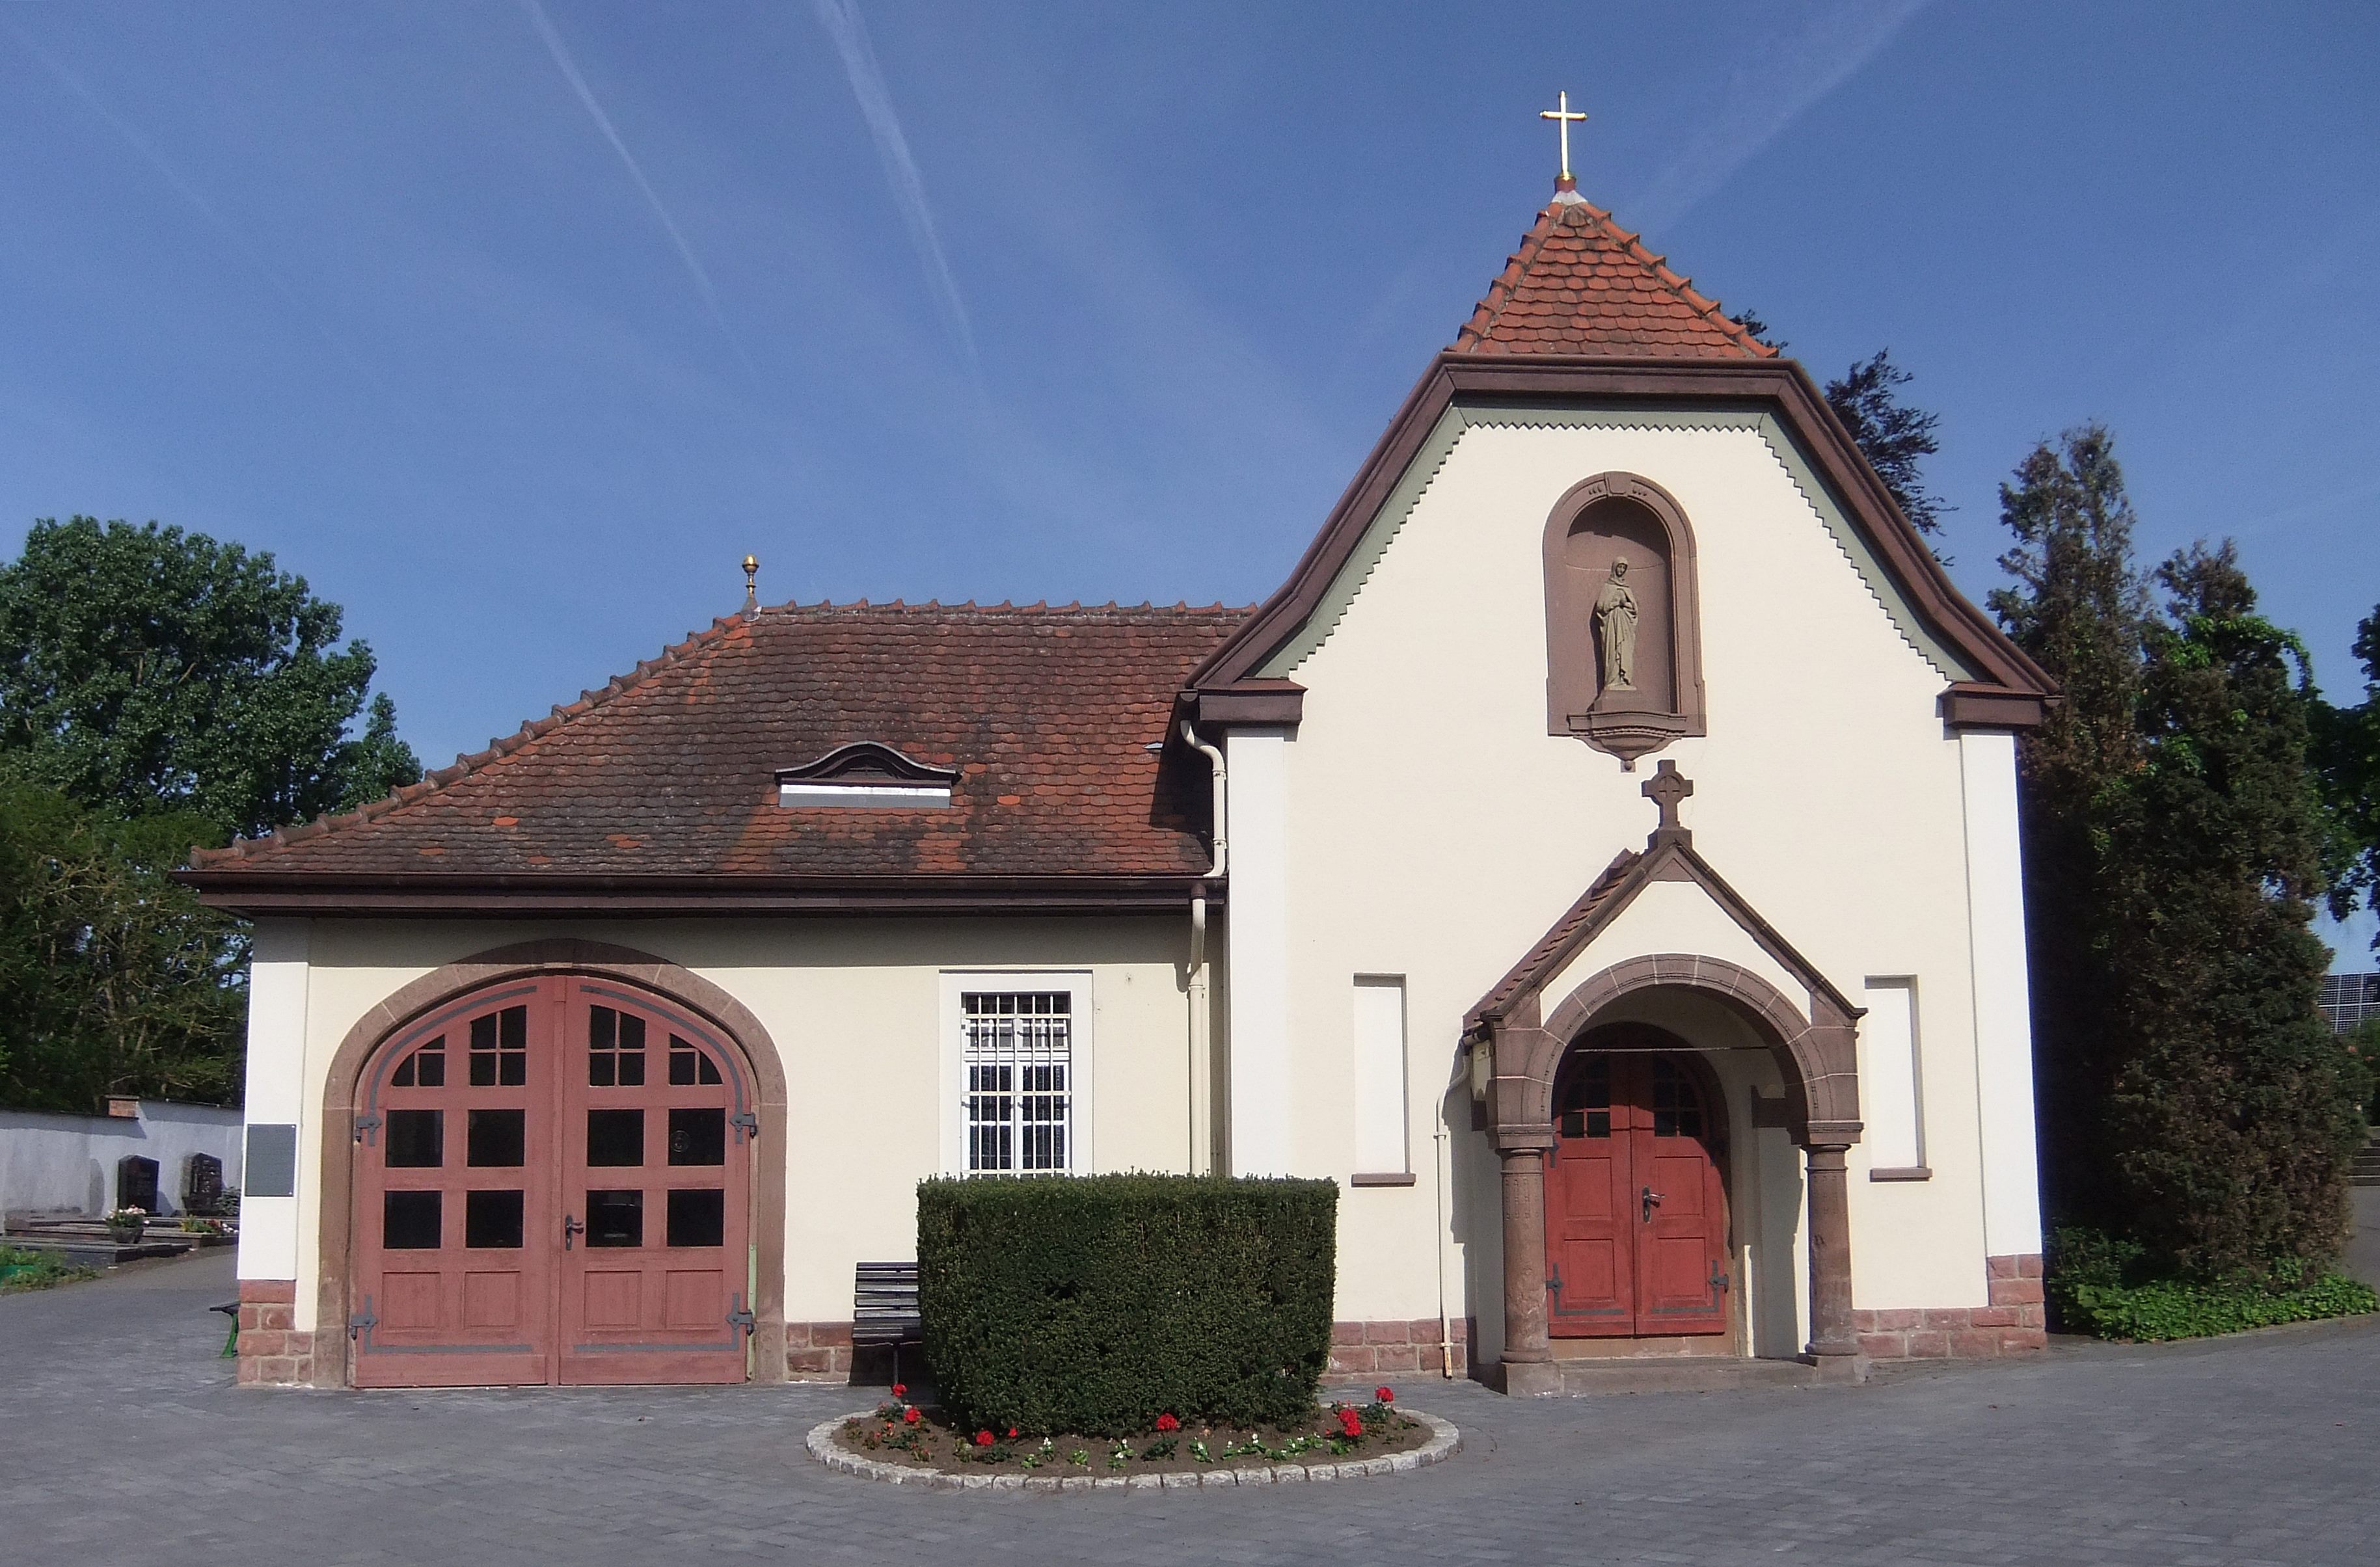 Datei:Friedhofkapelle Dudenhofen.JPG